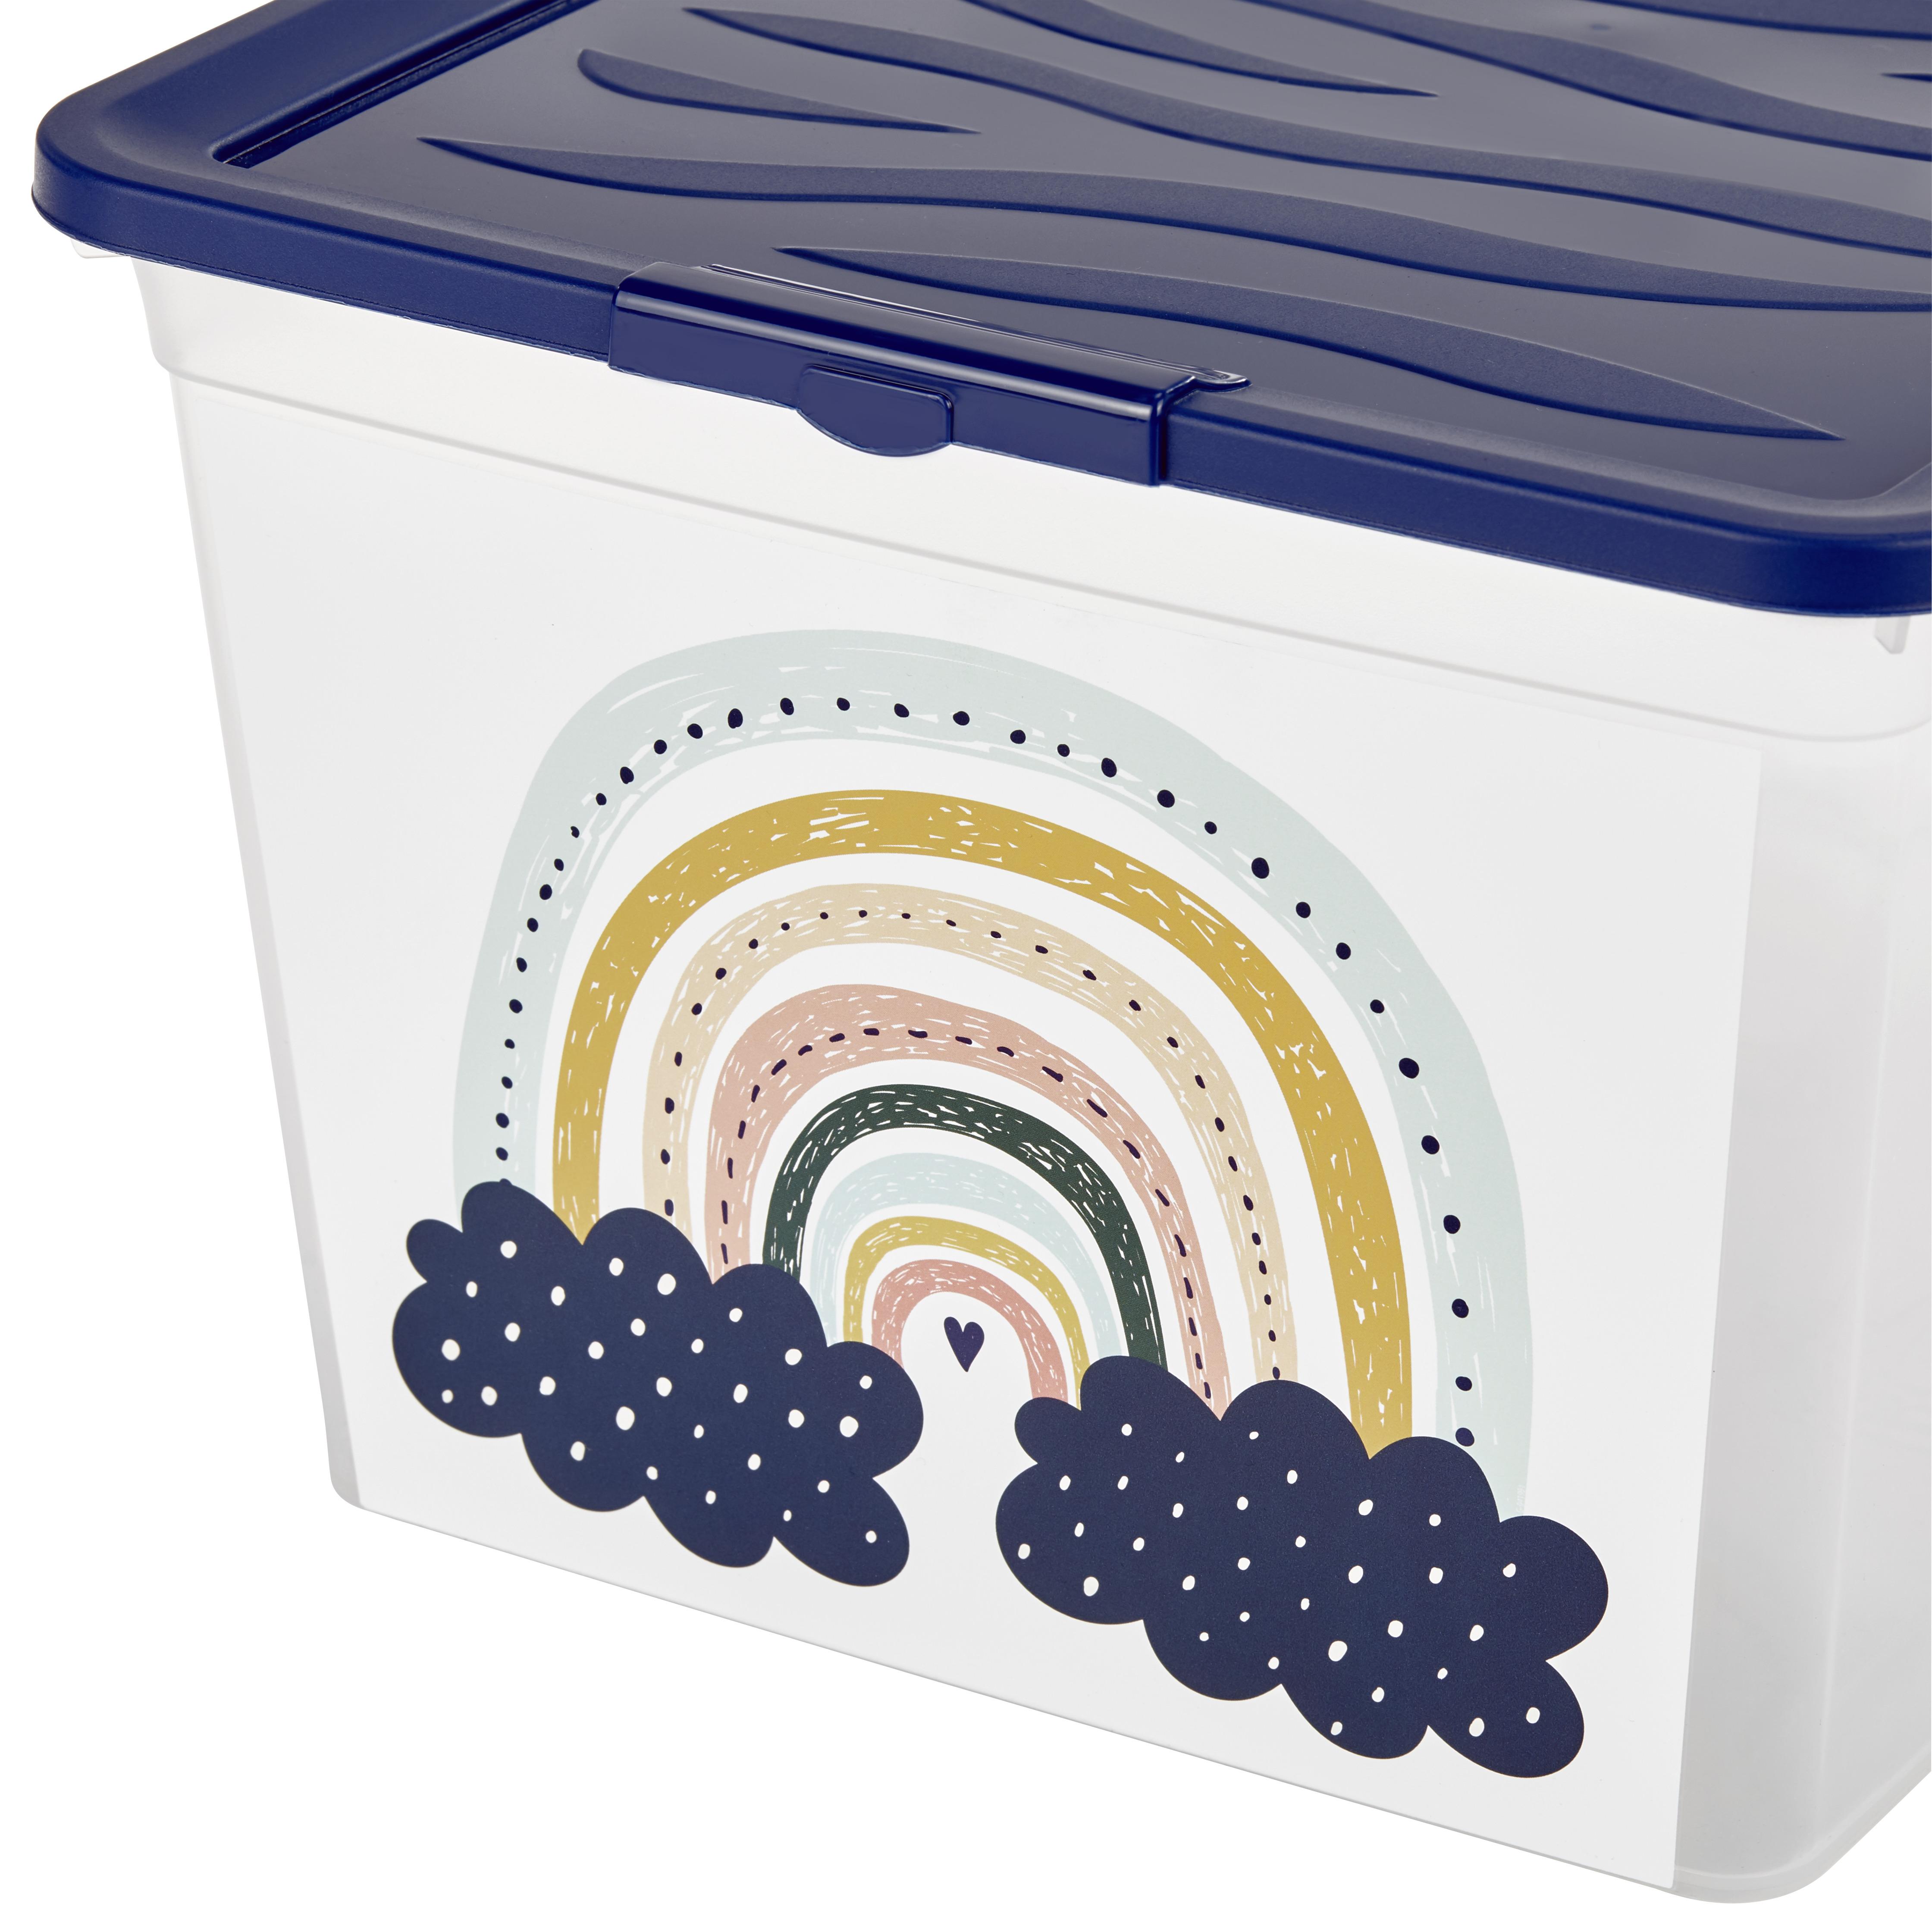 Aufbewahrungsbox Regenbogen mit Deckel 38,4x19,9x28,3 cm - Klar/Gelb, KONVENTIONELL, Kunststoff (38,4/19,9/28,3cm)